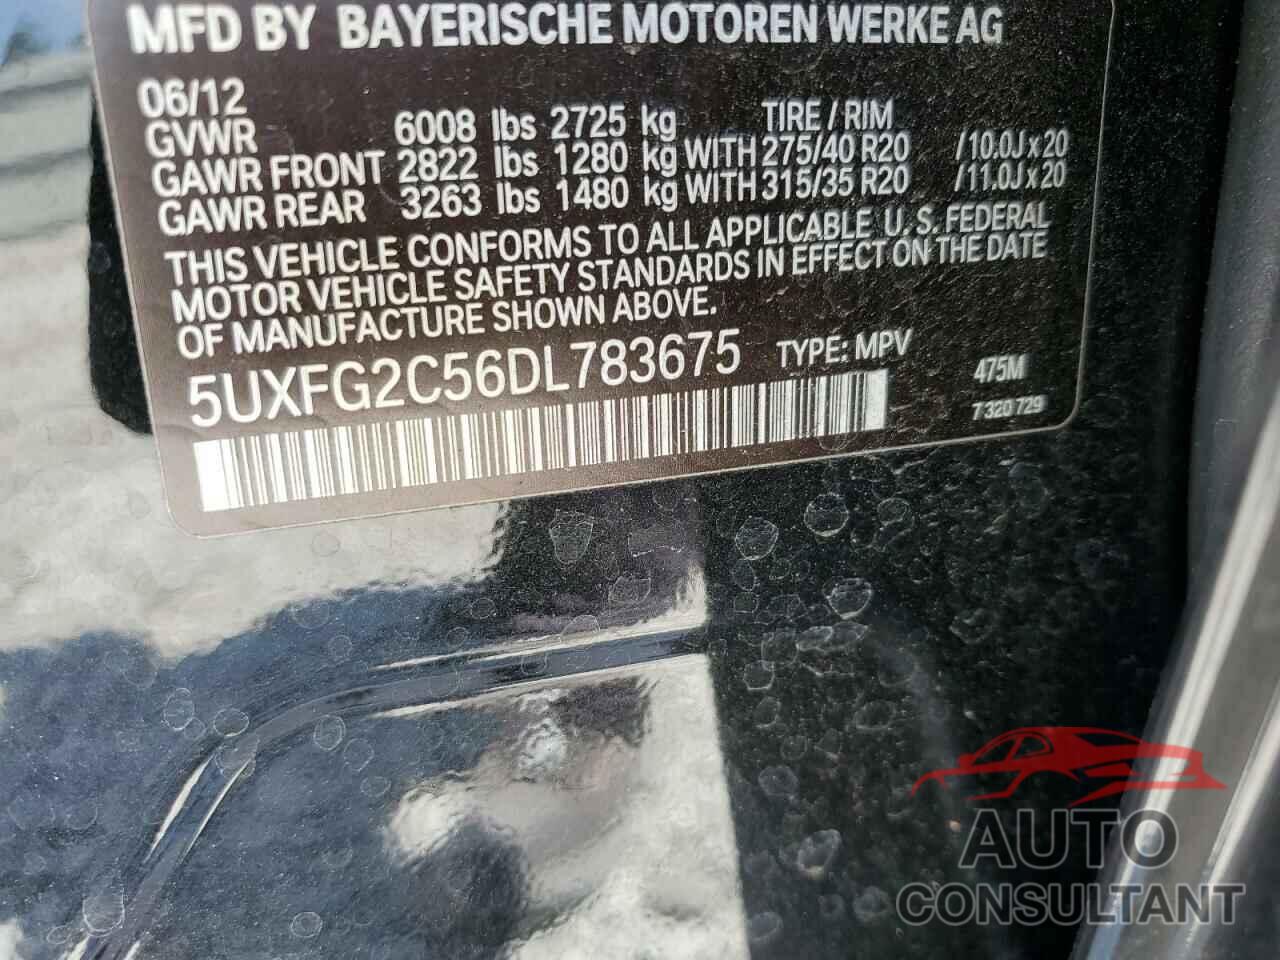 BMW X6 2013 - 5UXFG2C56DL783675